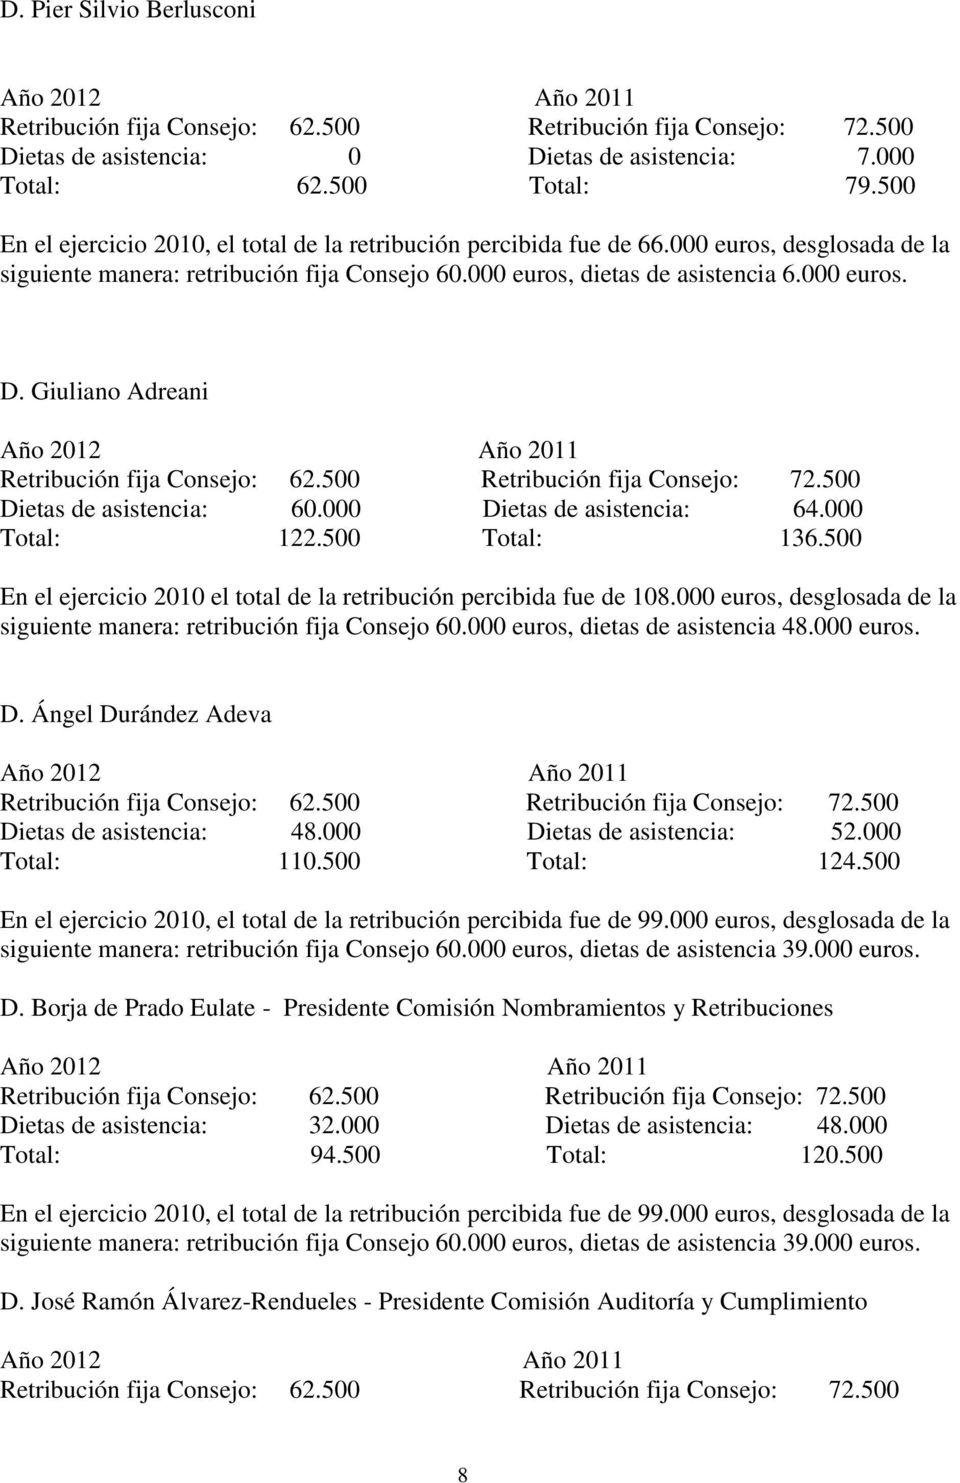 000 Total: 122.500 Total: 136.500 En el ejercicio 2010 el total de la retribución percibida fue de 108.000 euros, desglosada de la siguiente manera: retribución fija Consejo 60.